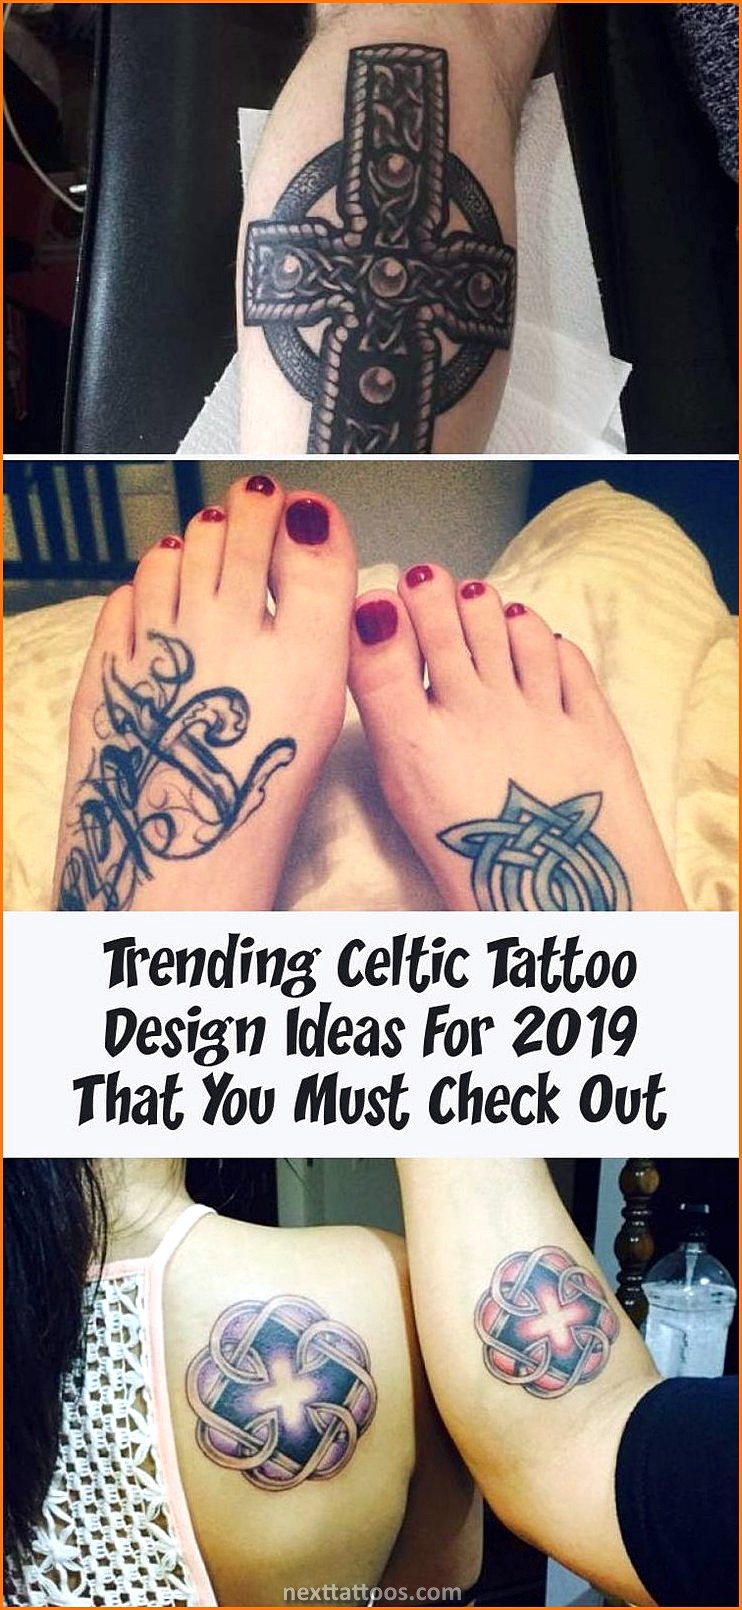 Trending Tattoos For Guys 2022